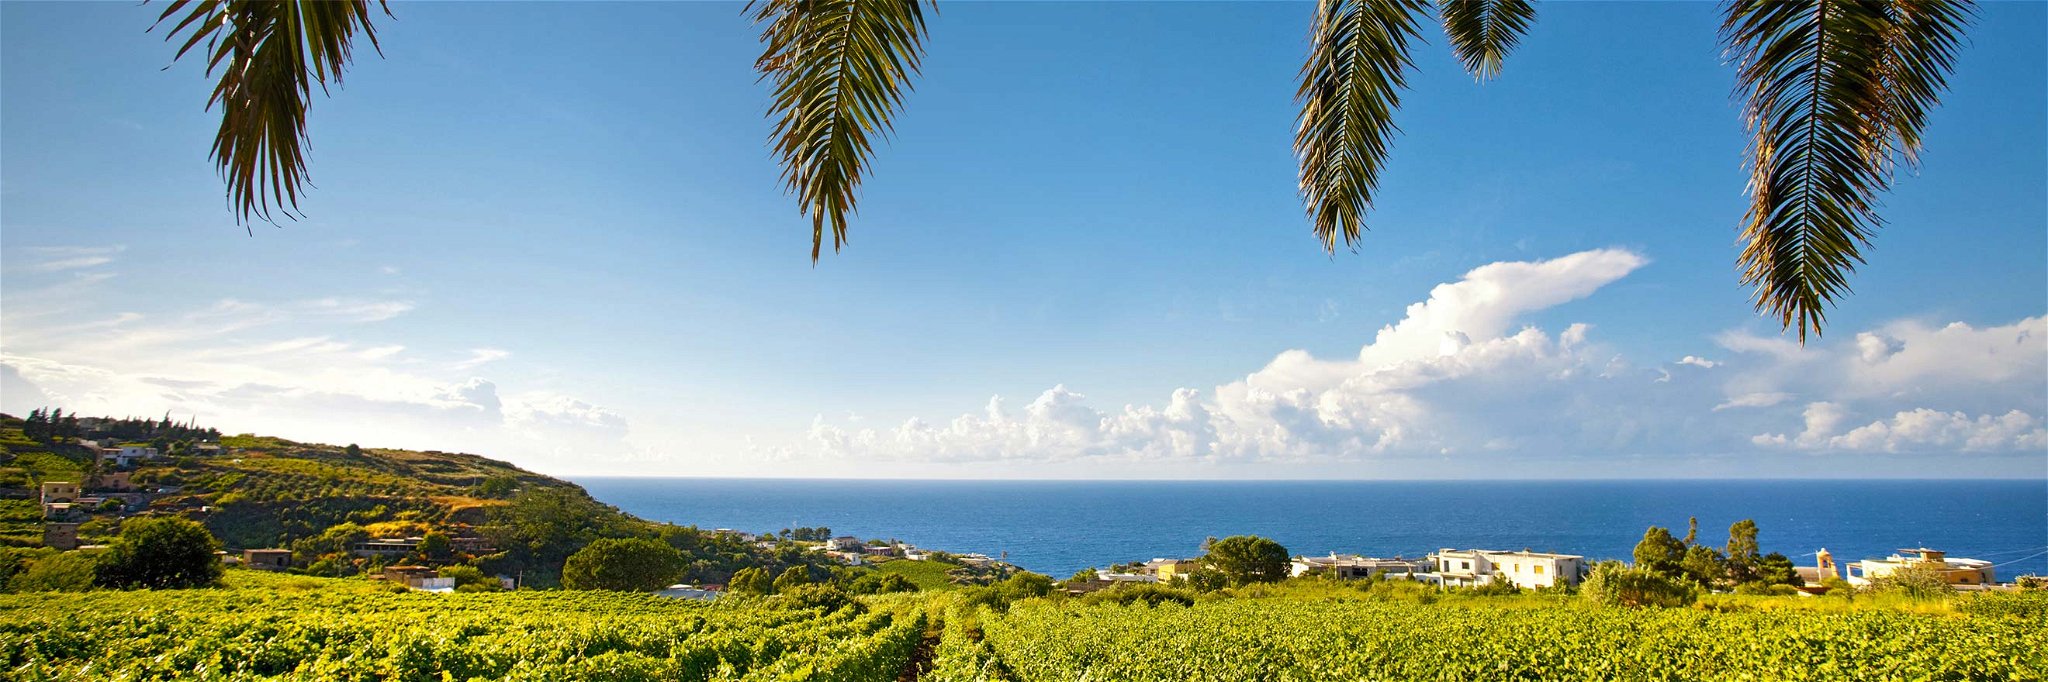 Grüne Reben und blaues Meer, eine Wohltat für Auge und Seele: So sieht es vielerorts aus an Siziliens Küsten. 